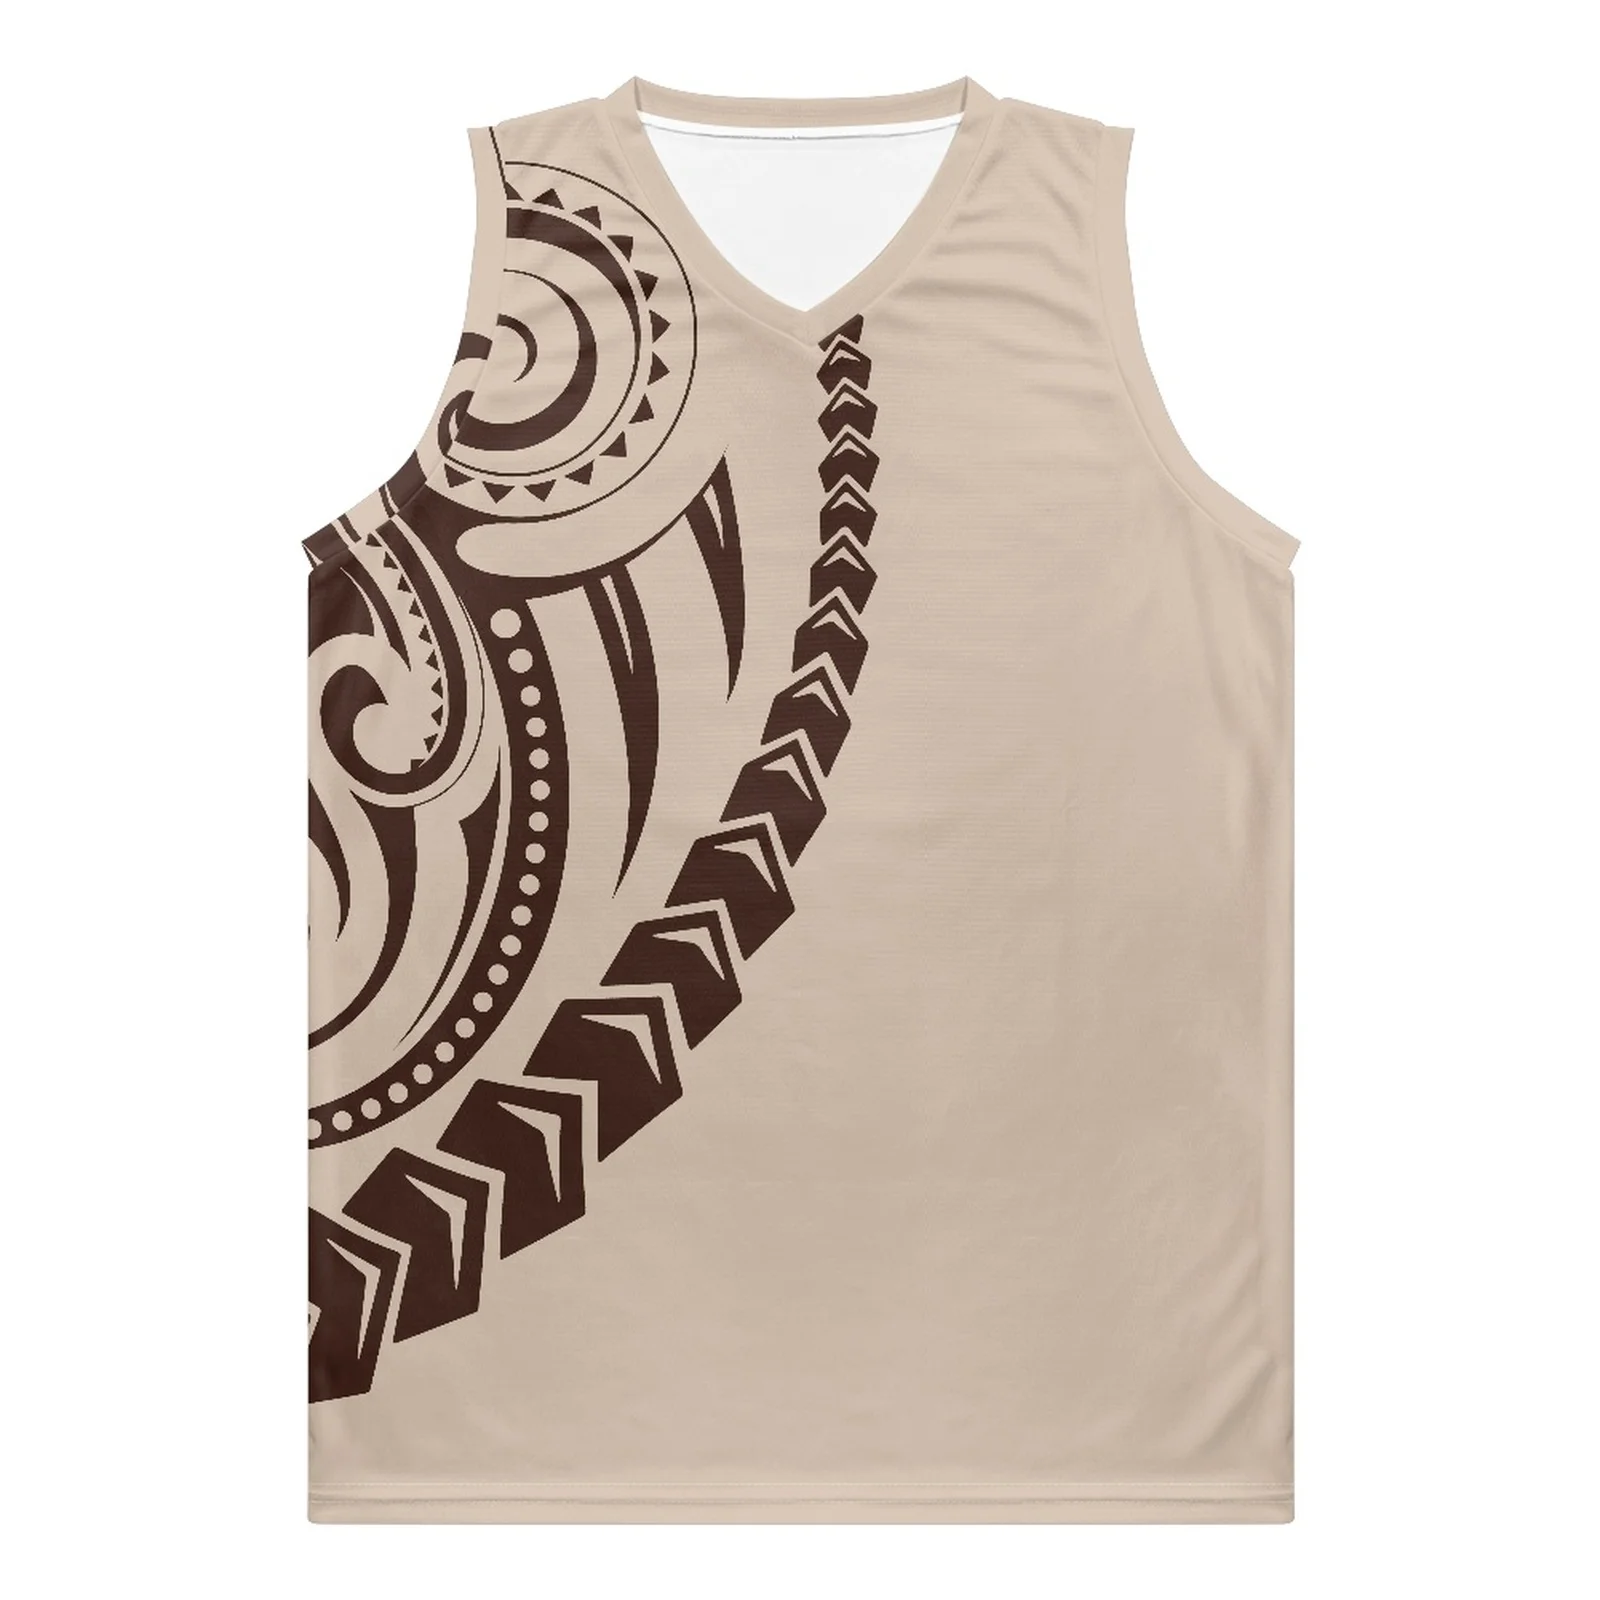 

Полинезийские племенные Гуам Тотем тату принты оптом Дешевые Джерси дышащая Баскетбольная одежда 100% полиэстер рубашки униформы Горячие